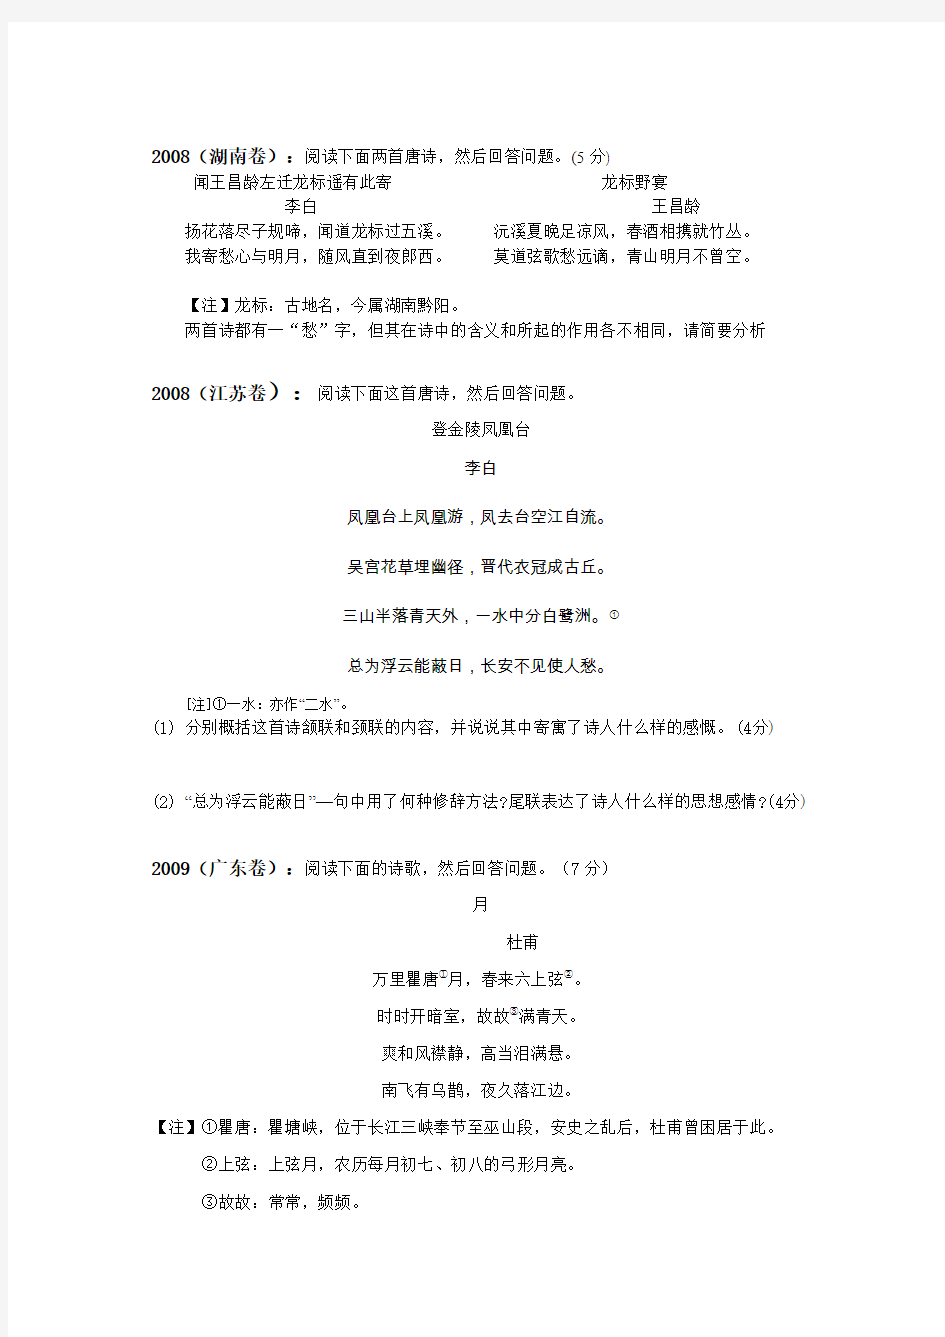 1999全国阅读下面一首唐诗,完成8—9题。